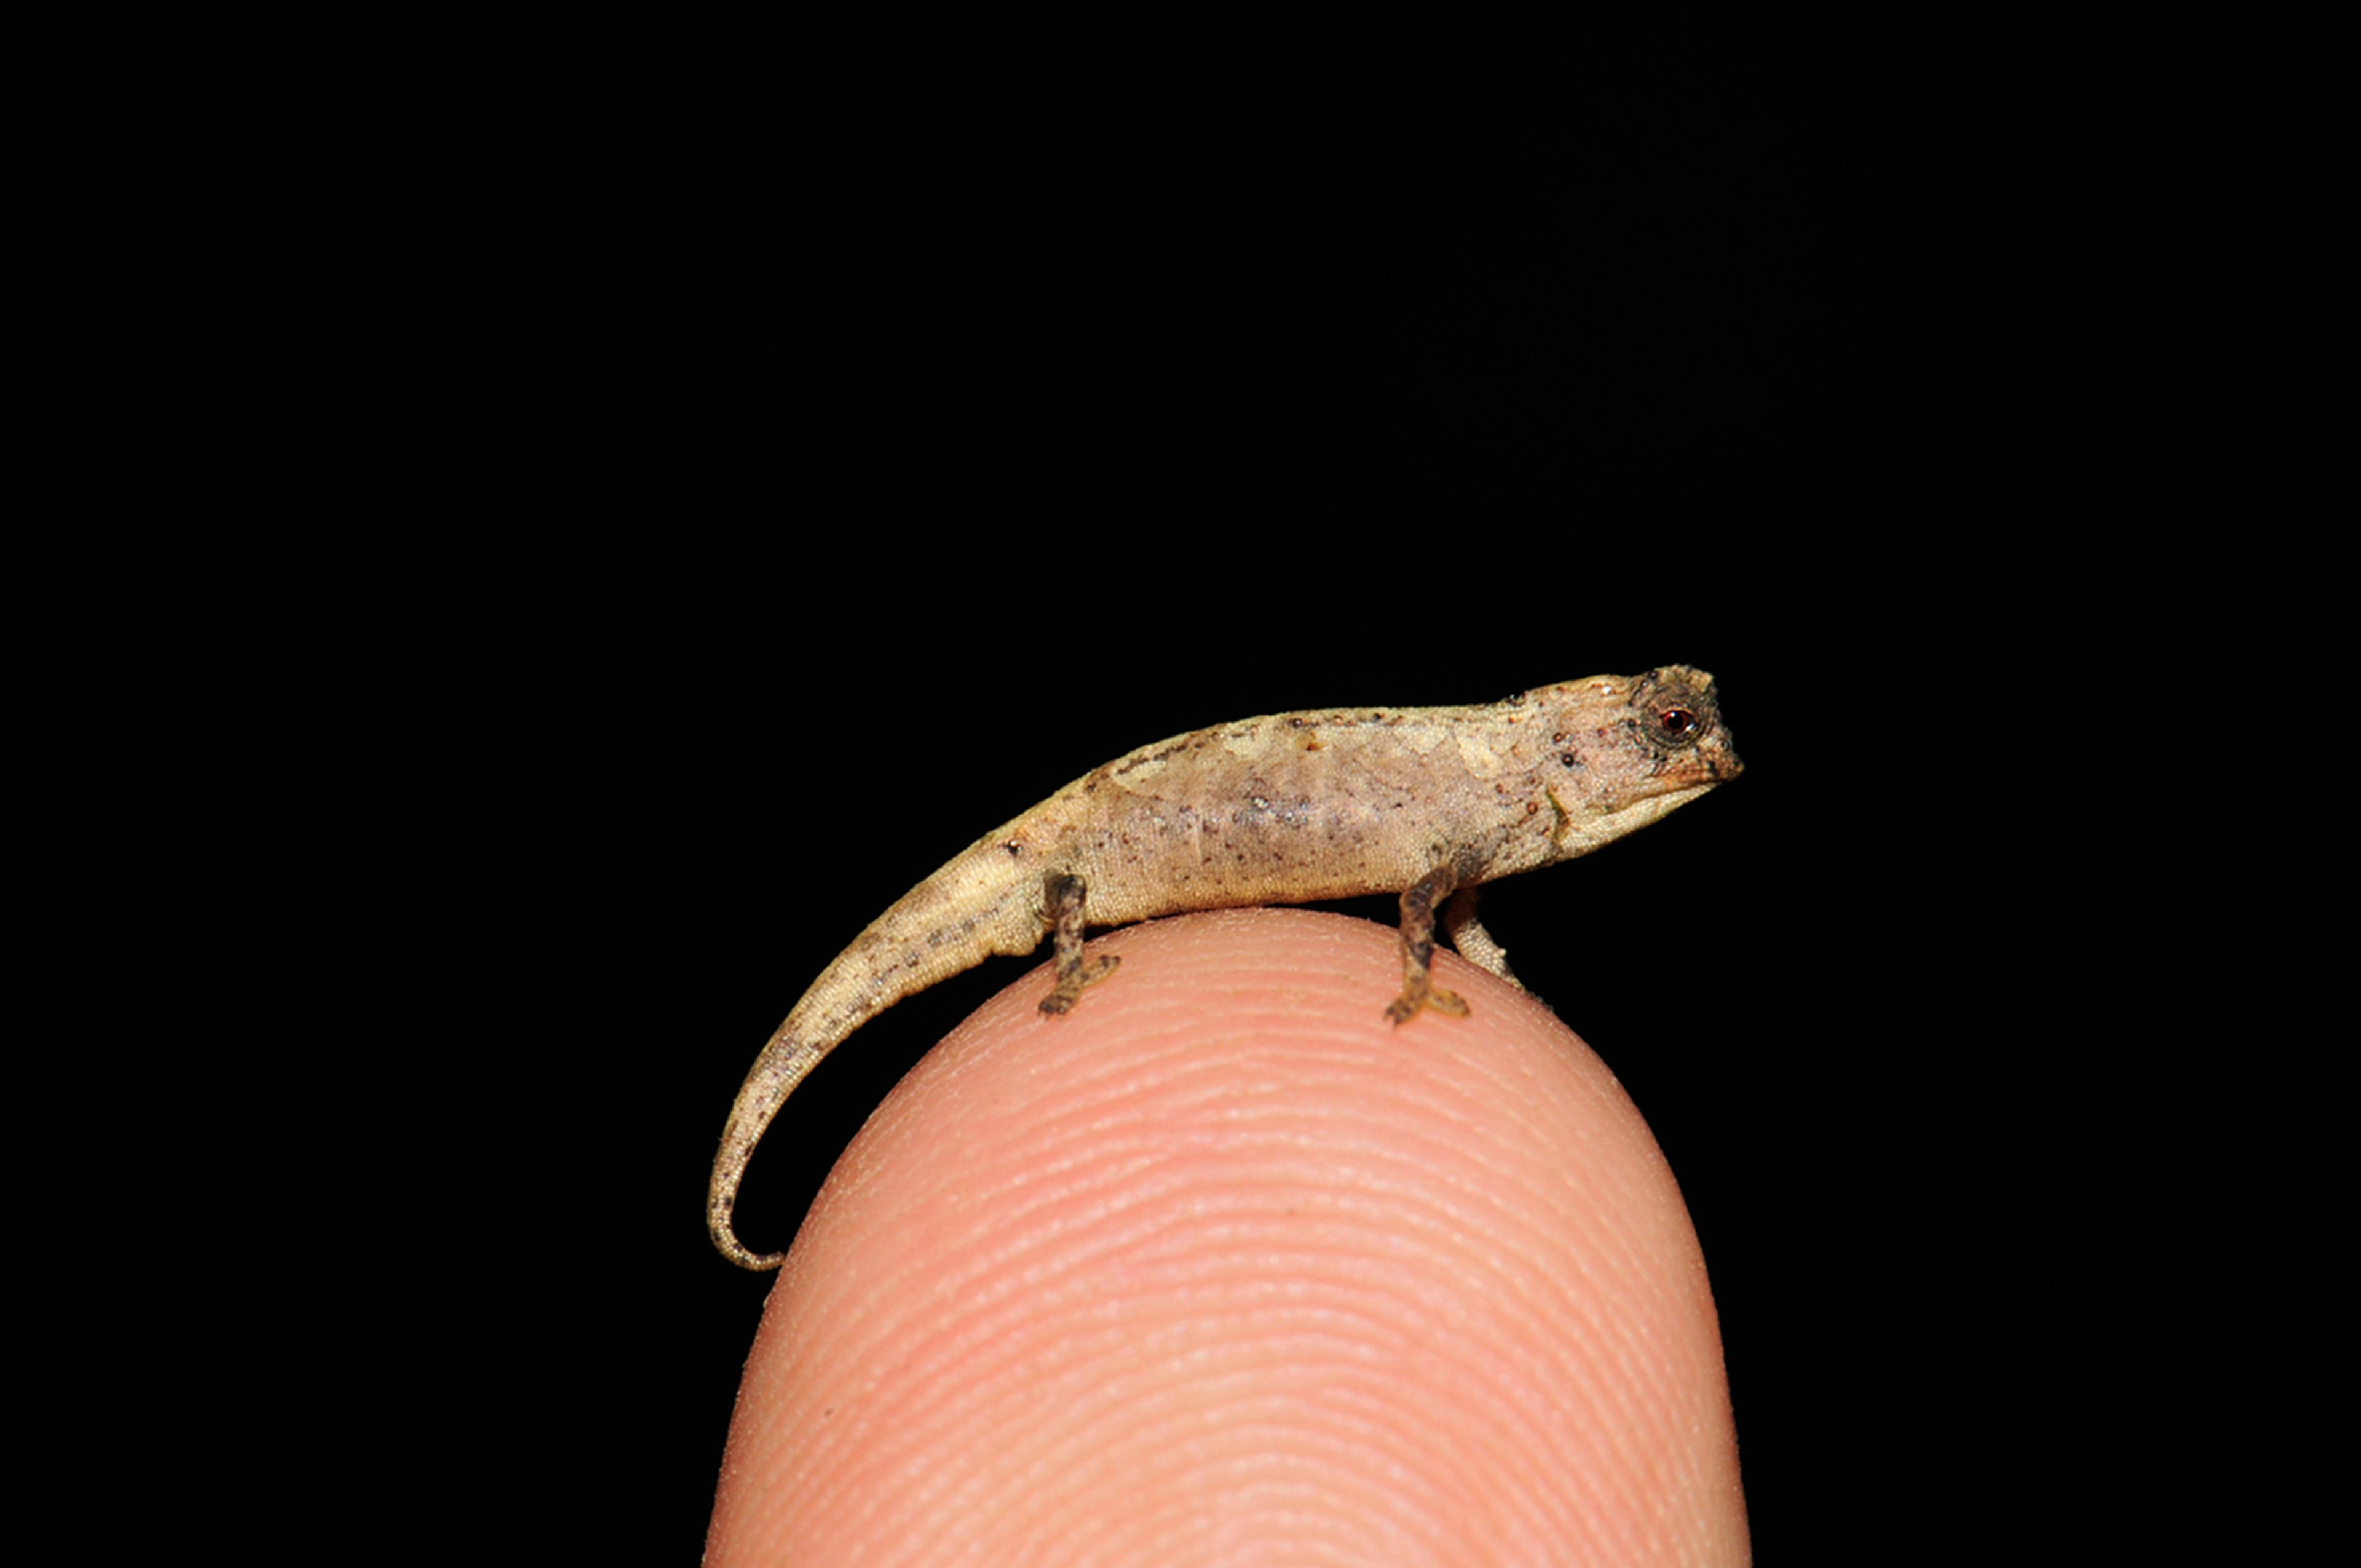 Descubierta una nueva especie: el nano-camaleón, el reptil más pequeño jamás conocido